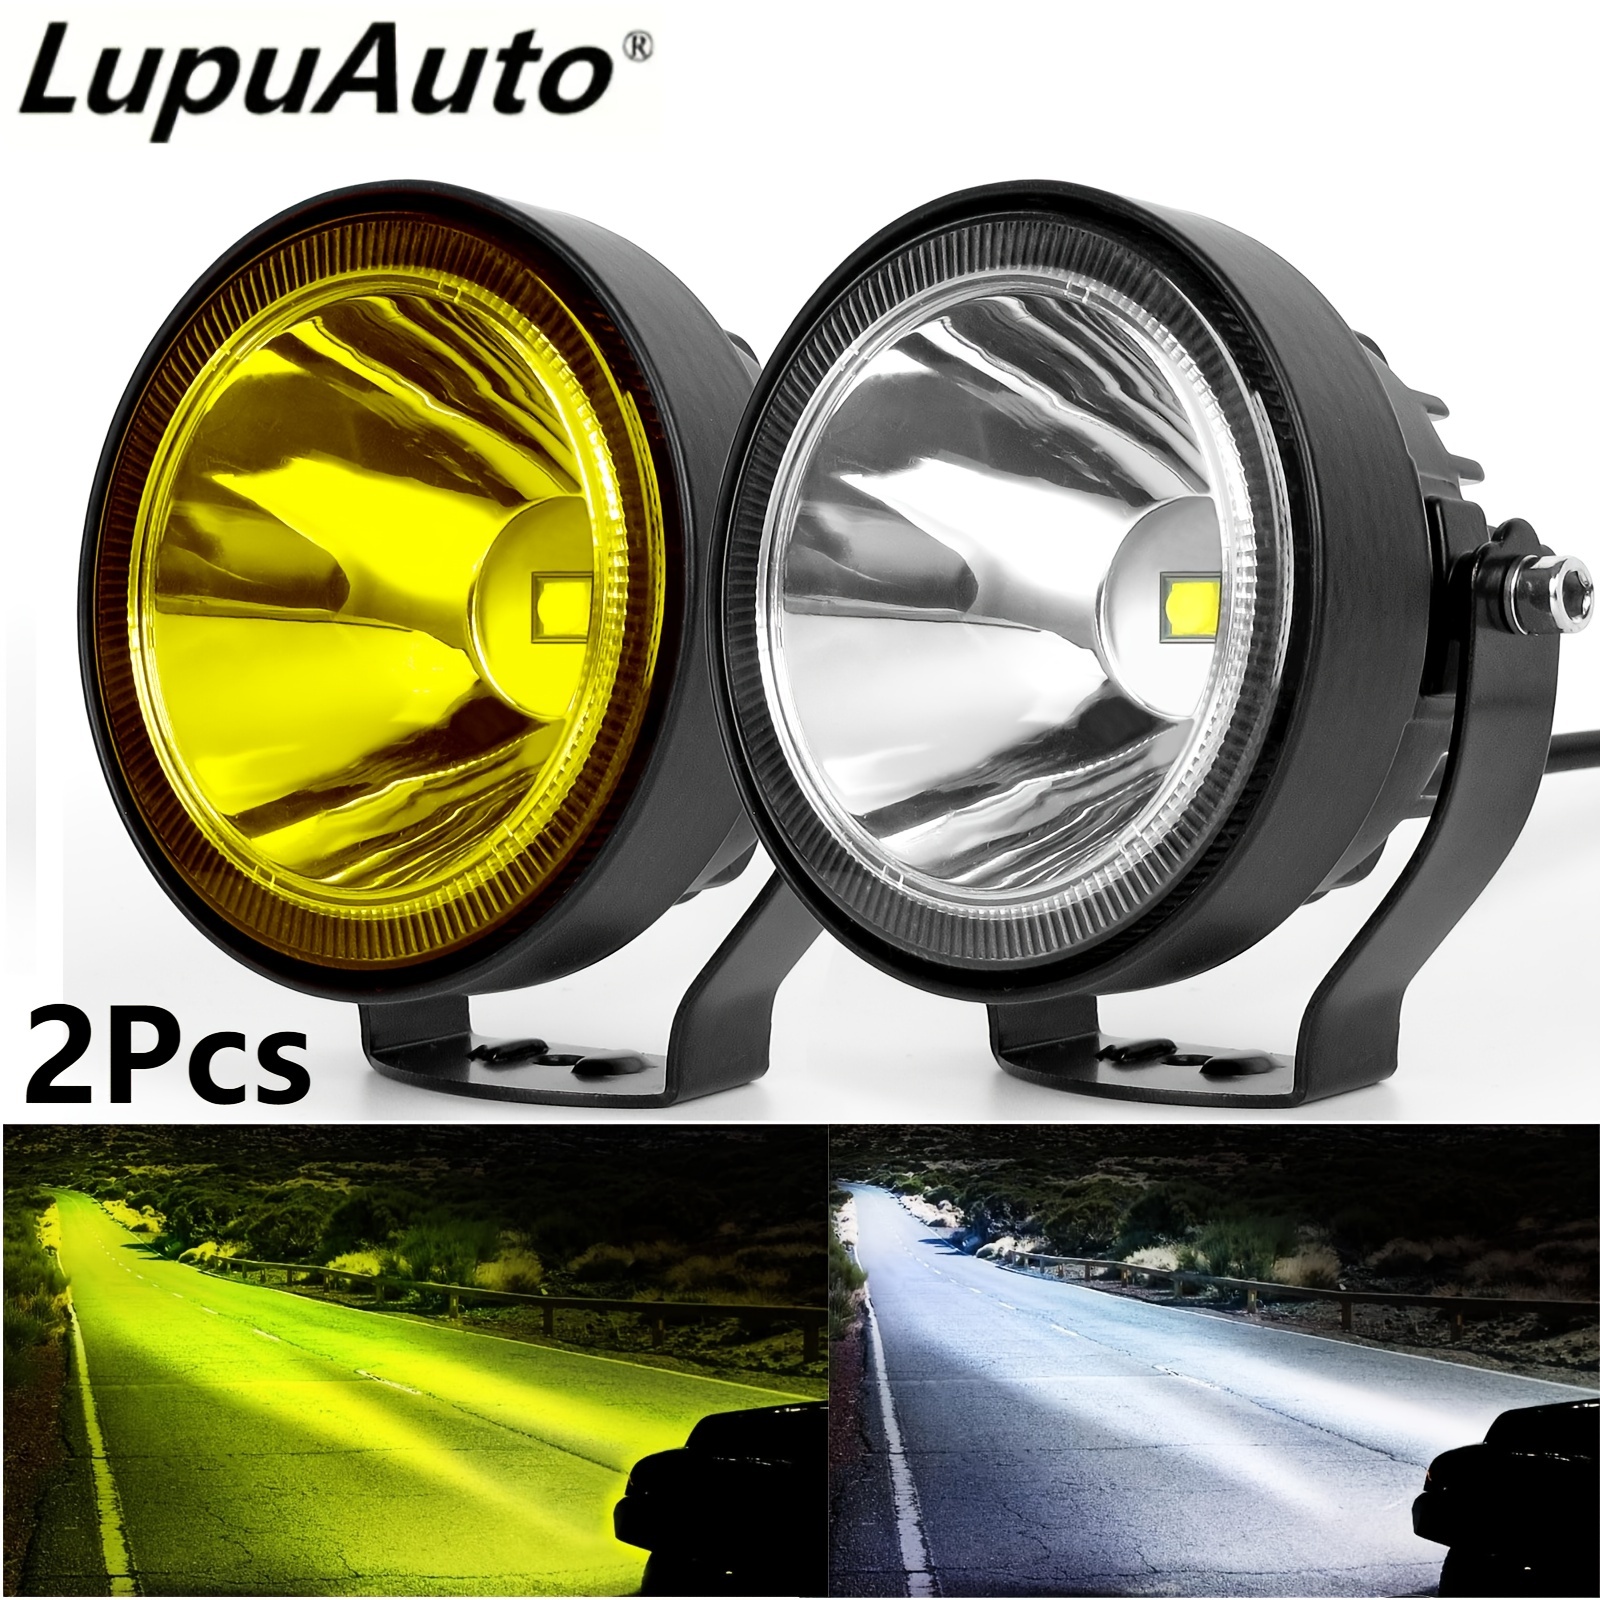 RIGIDON Curved LED Lamp, LED Light Strip 12 V 24 V 42 Inch 105 cm 540 W  Spot Flood Combo Beam Offroad Lighting for Car SUV ATV, UTV, Tractor,  Truck